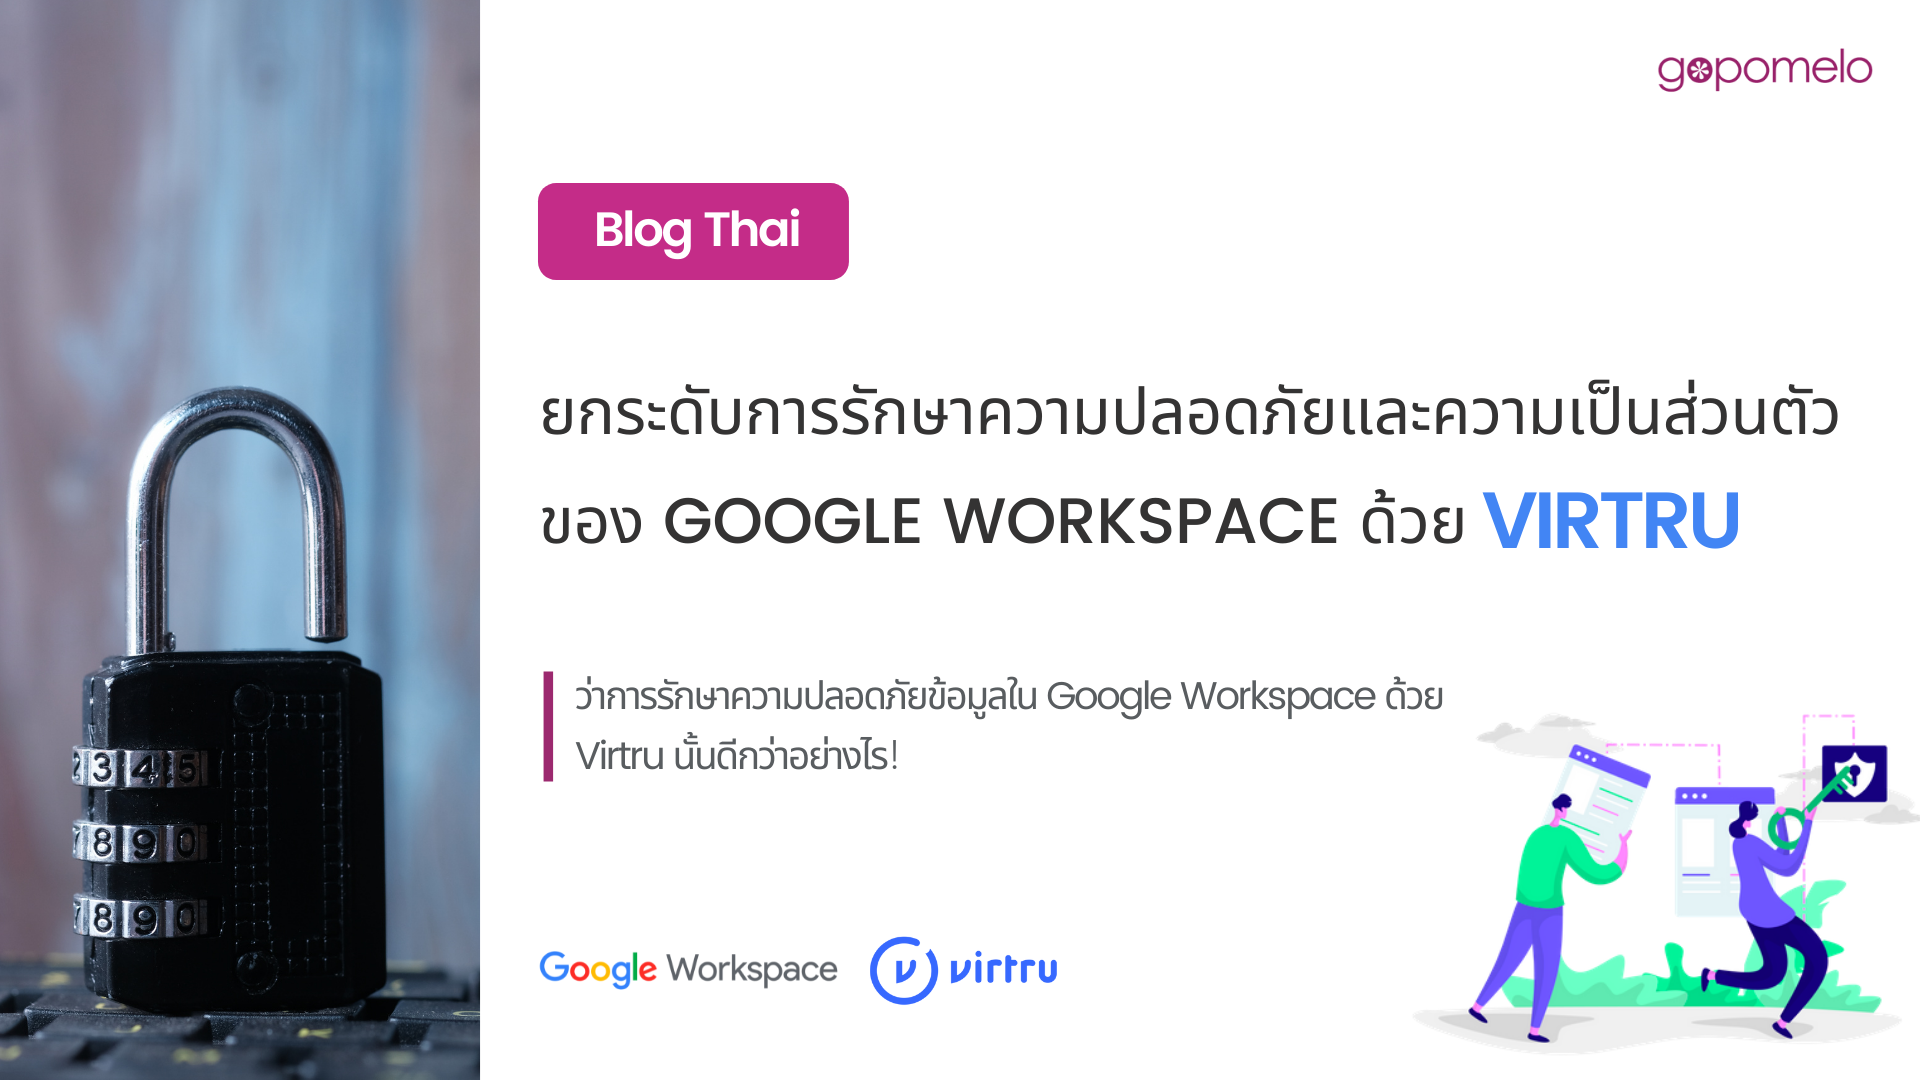 ยกระดับการรักษาความปลอดภัยและความเป็นส่วนตัวของ Google Workspace ด้วย Virtru